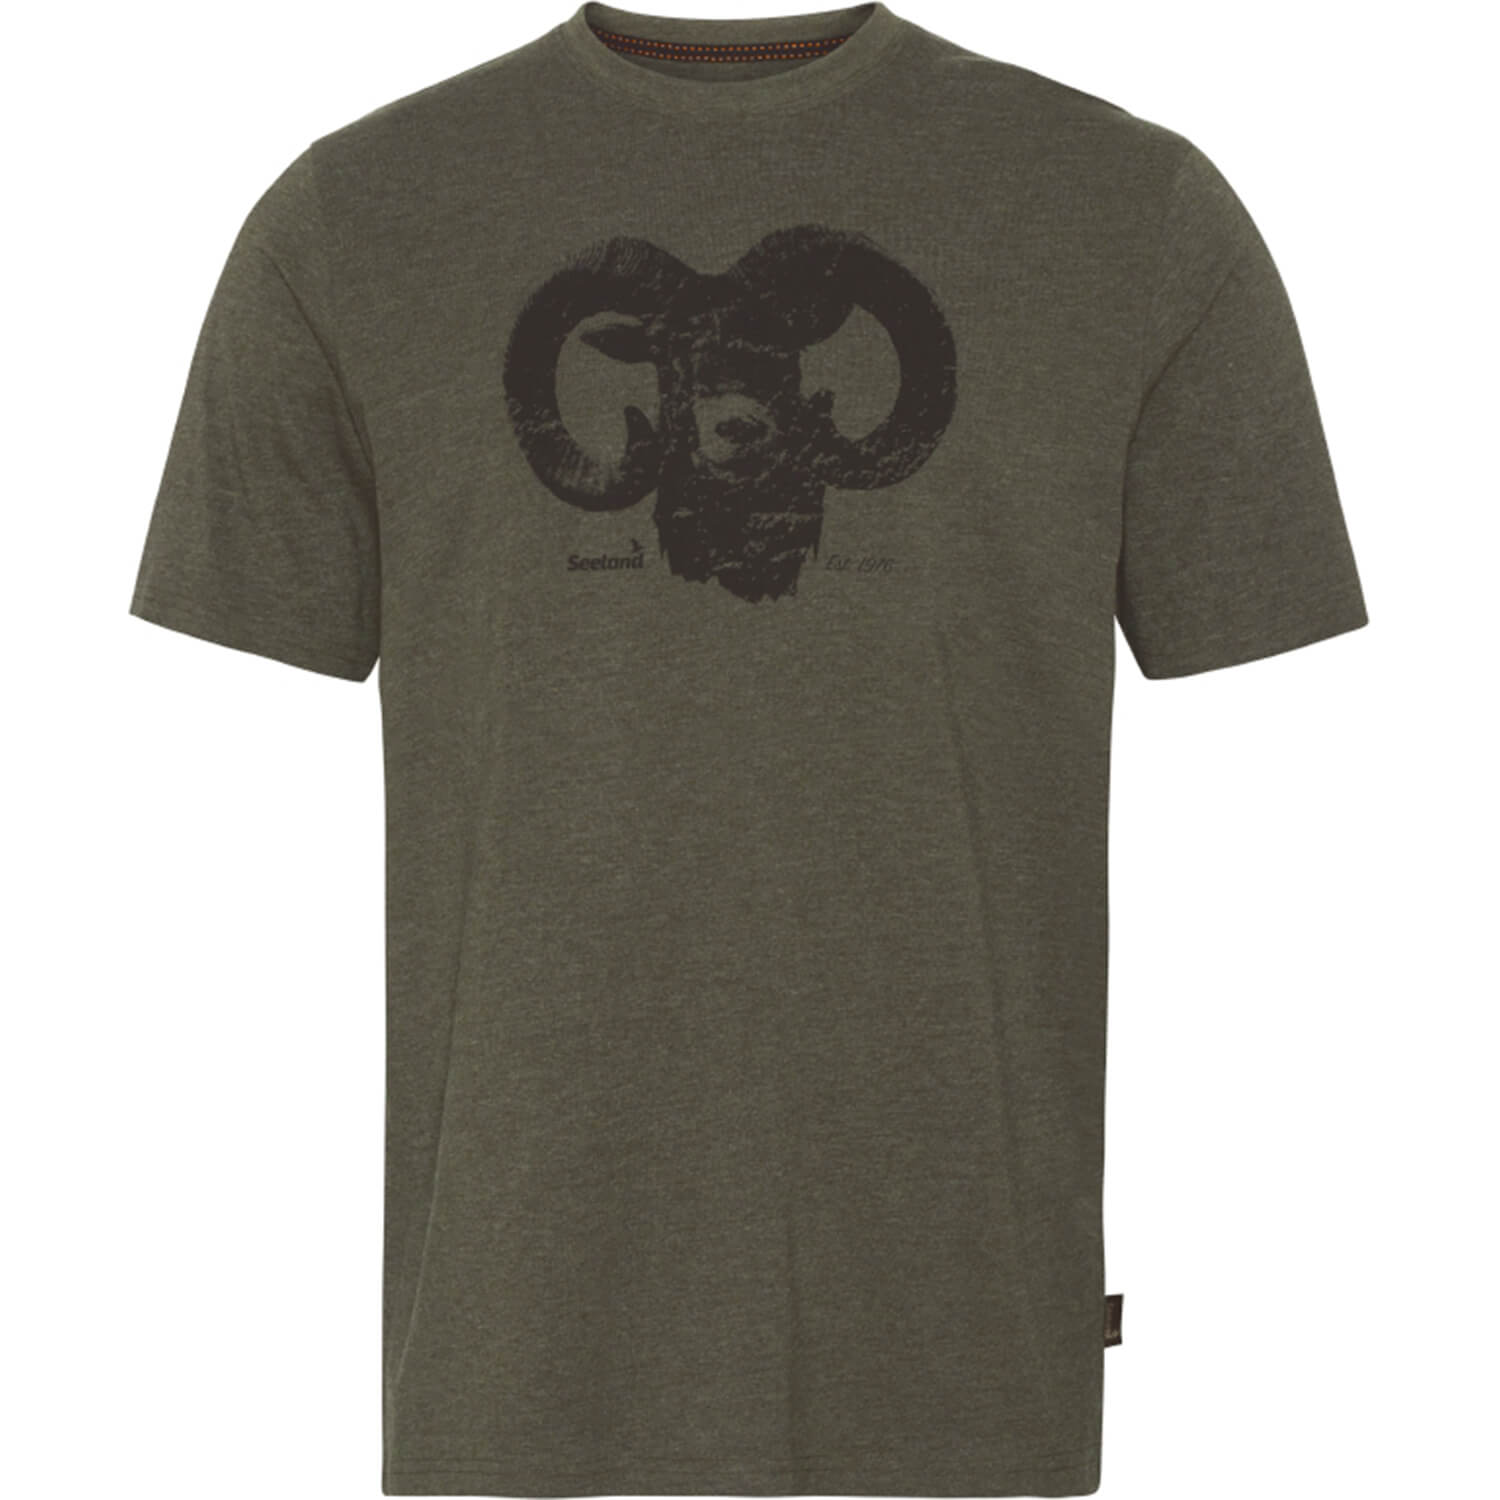  Seeland Outdoor T-shirt (Dennengroen gemêleerd) - Jachtshirts